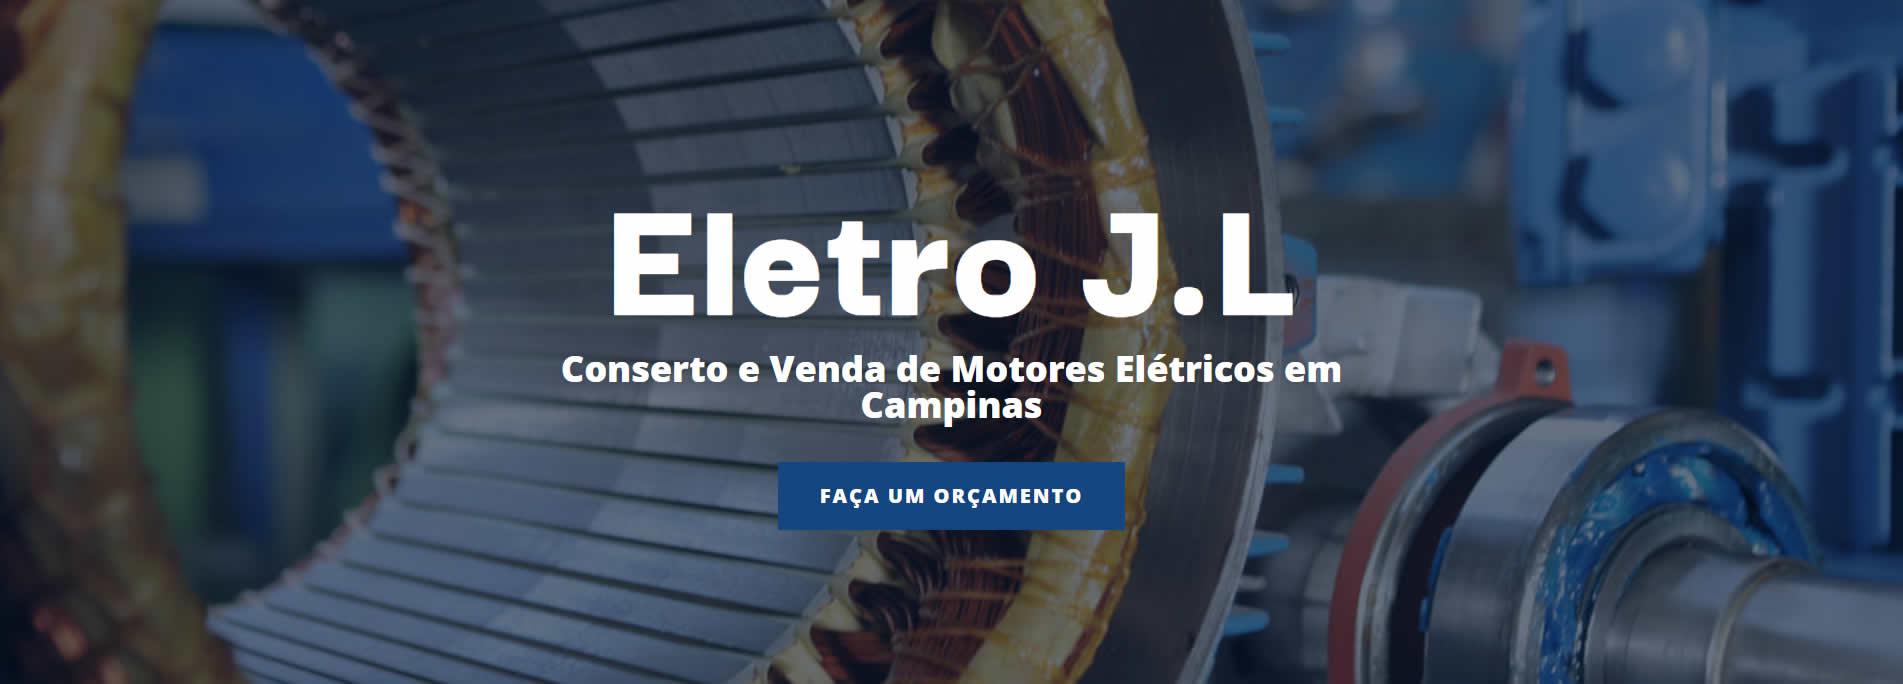 Eletro JL Campinas